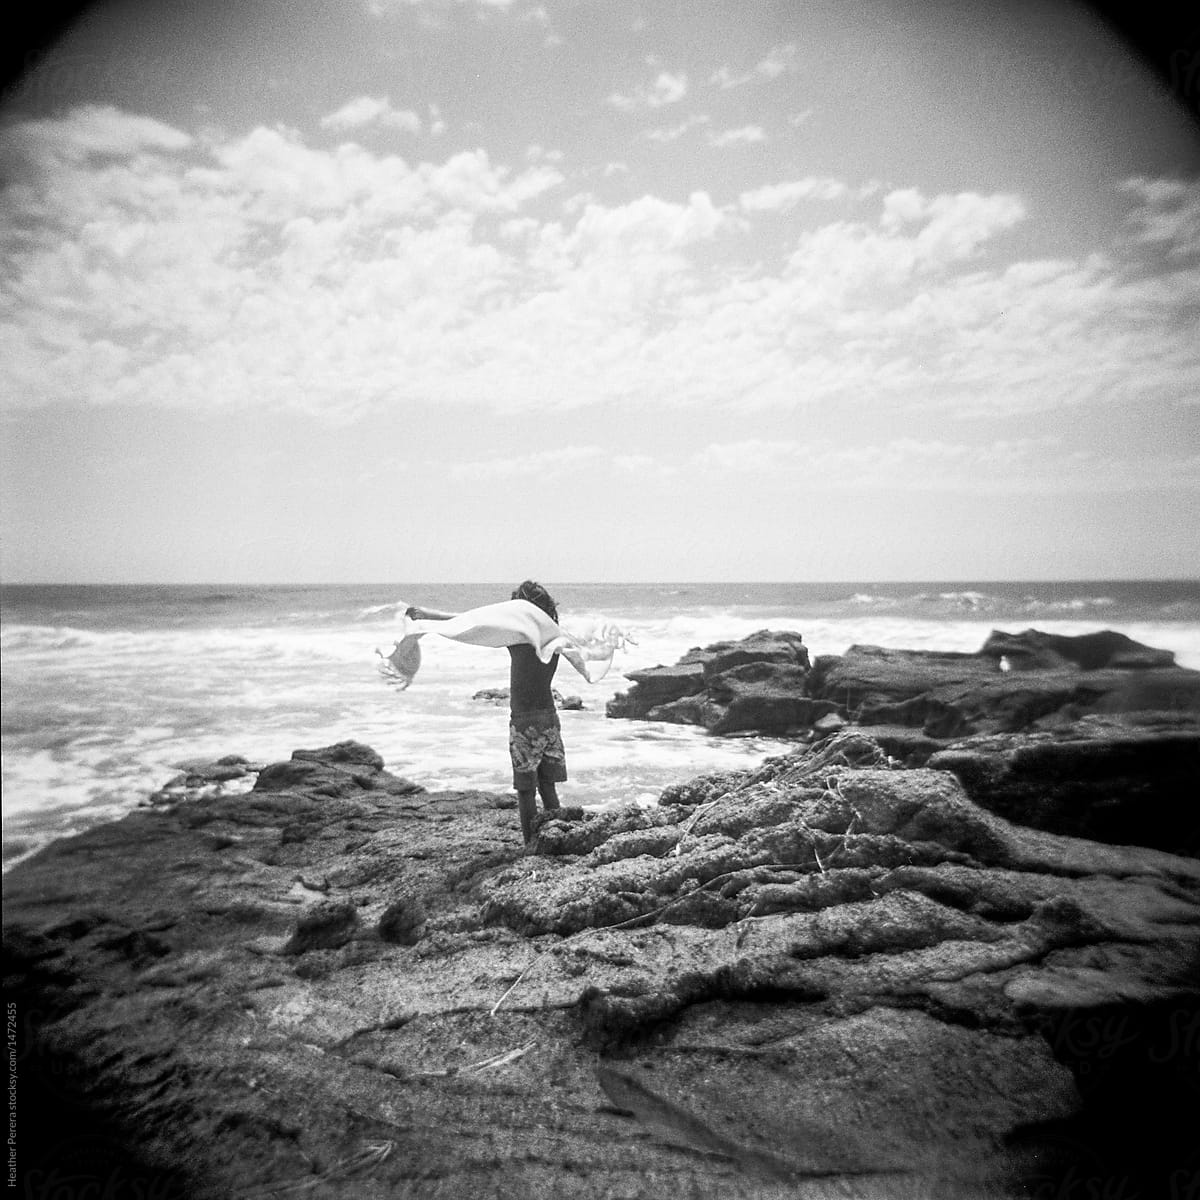 boy with towel in the wind on rocks near ocean